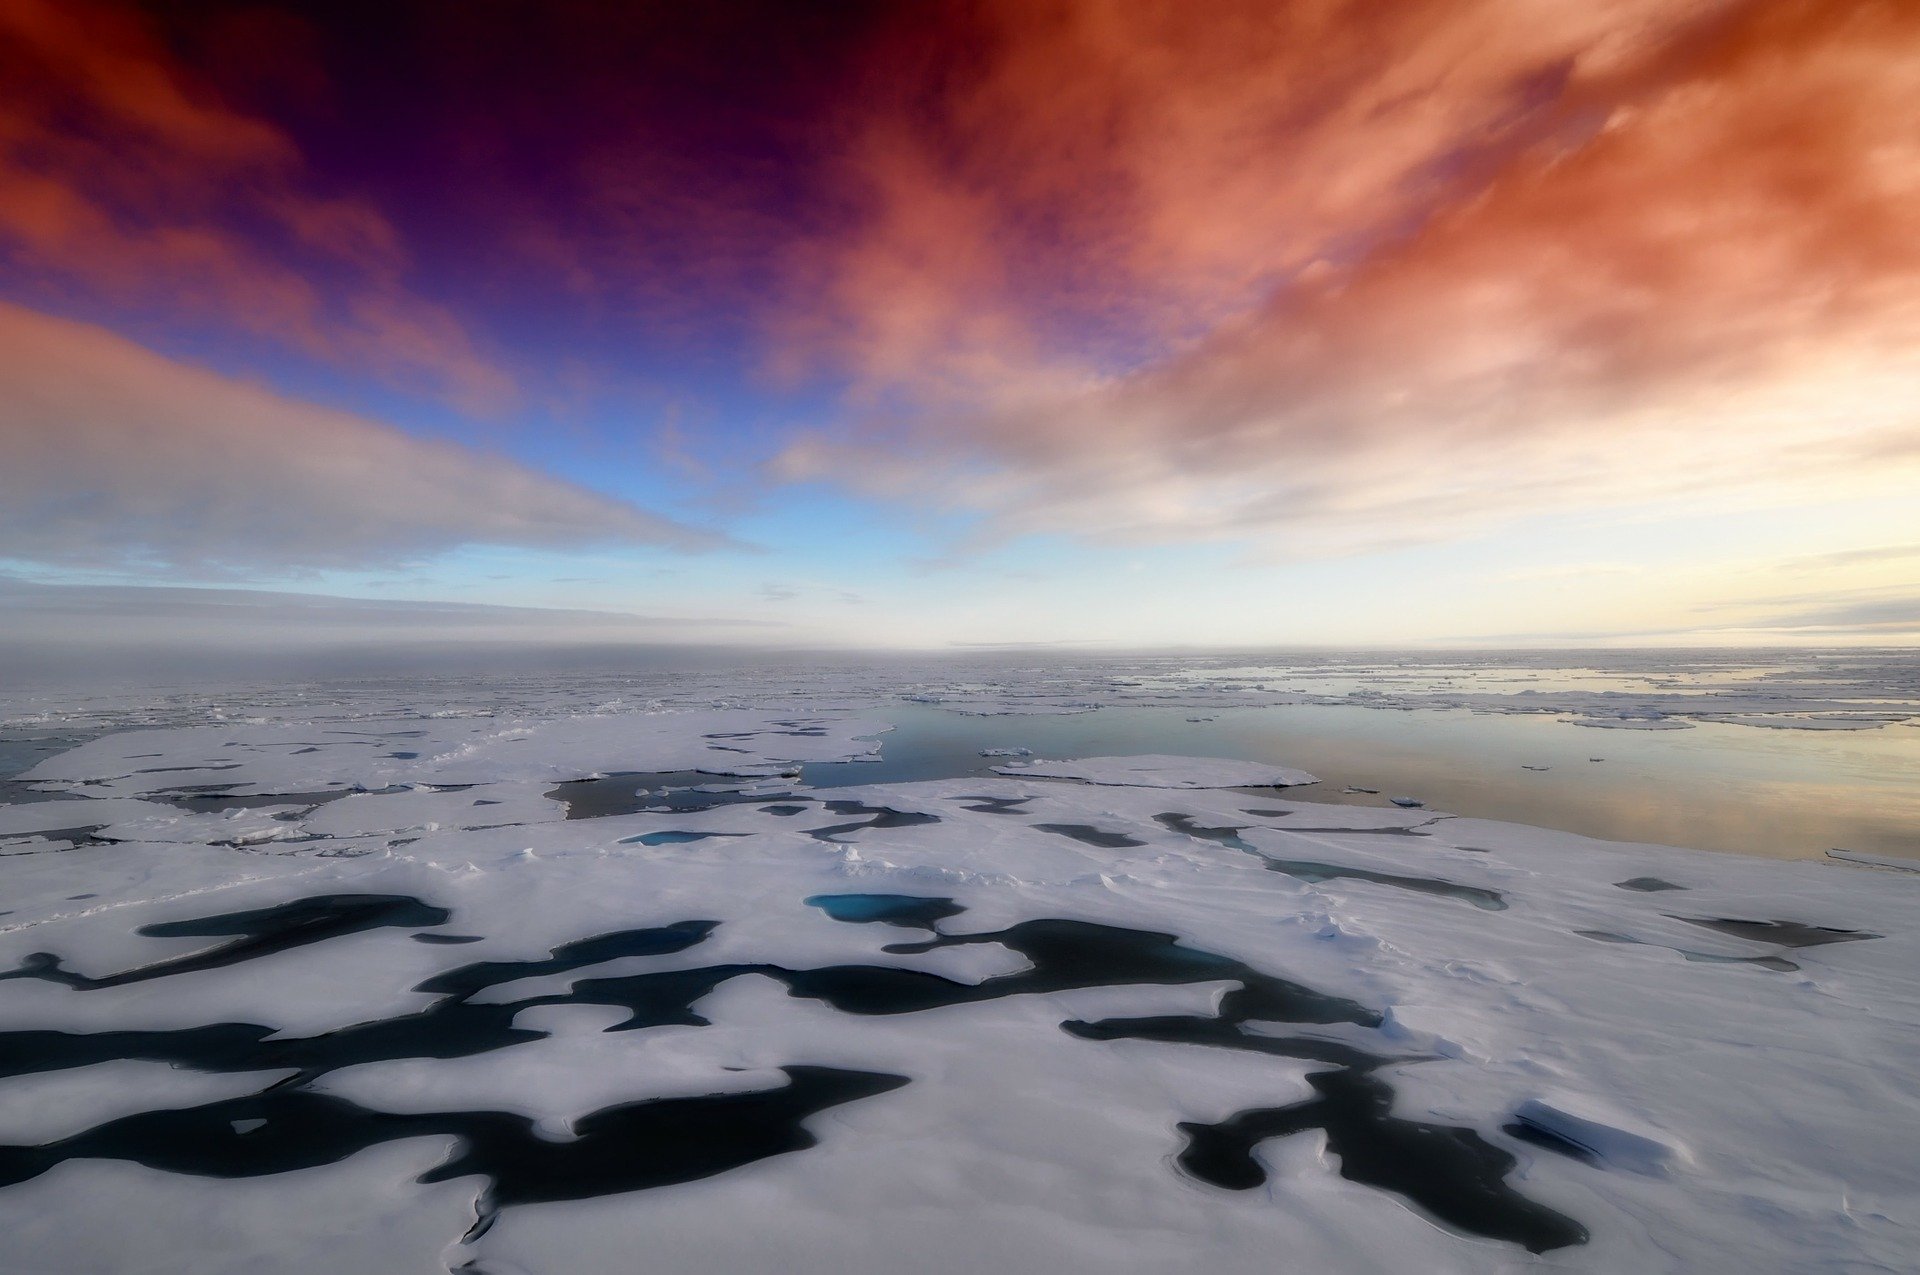 Clima: 120mila anni fa scioglimento ghiacci calotta antartica